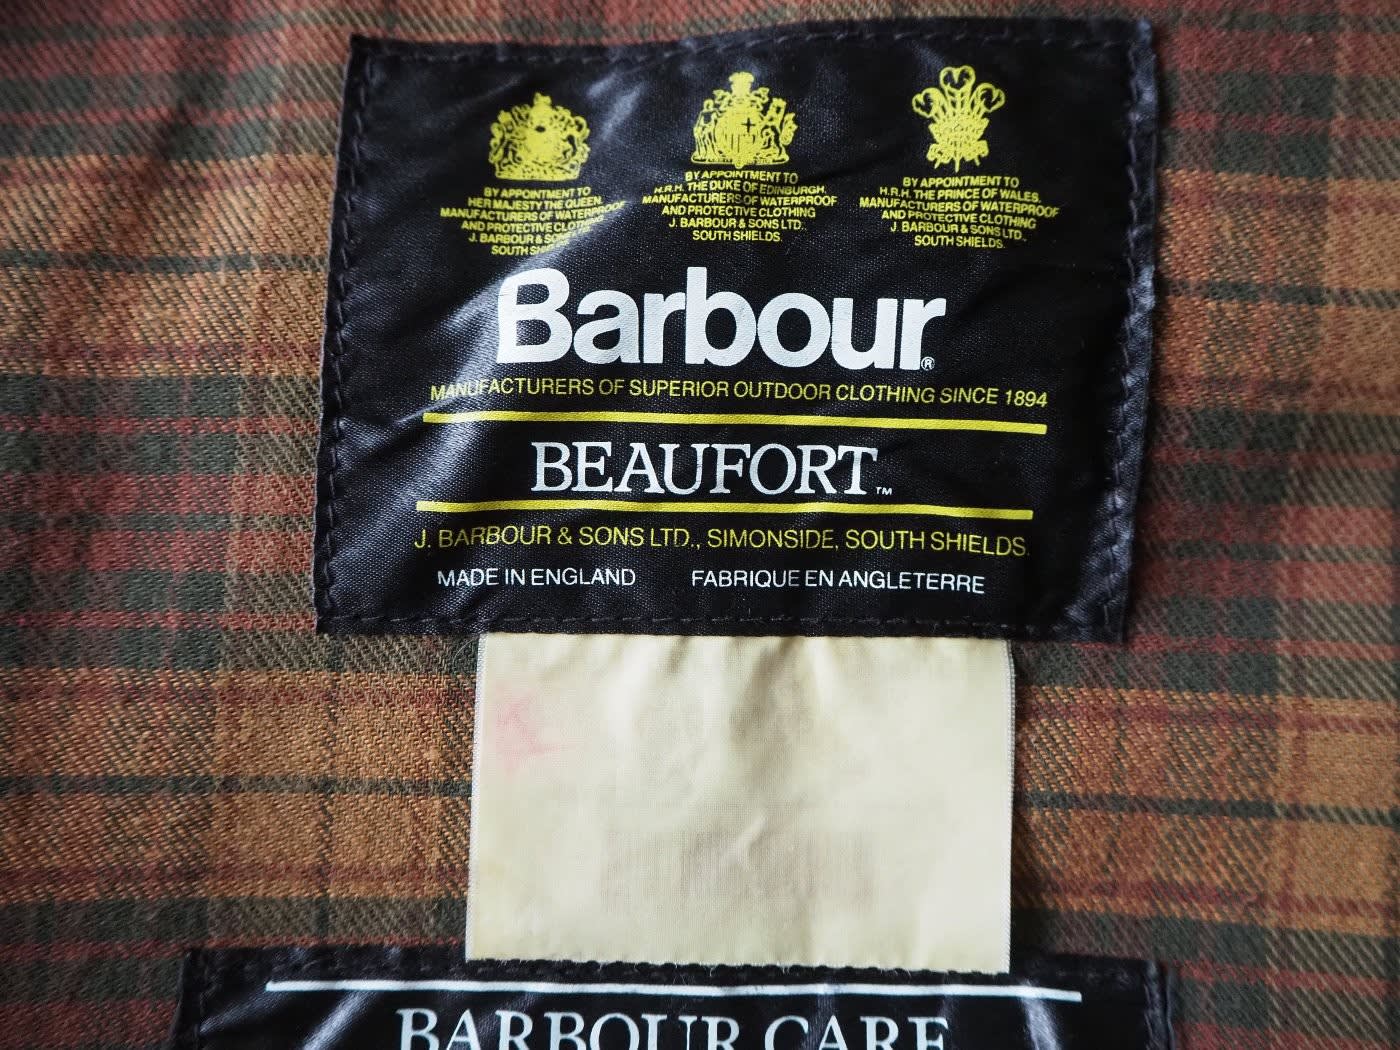 Barbour "Beaufort Jacket" - お買いモノ考